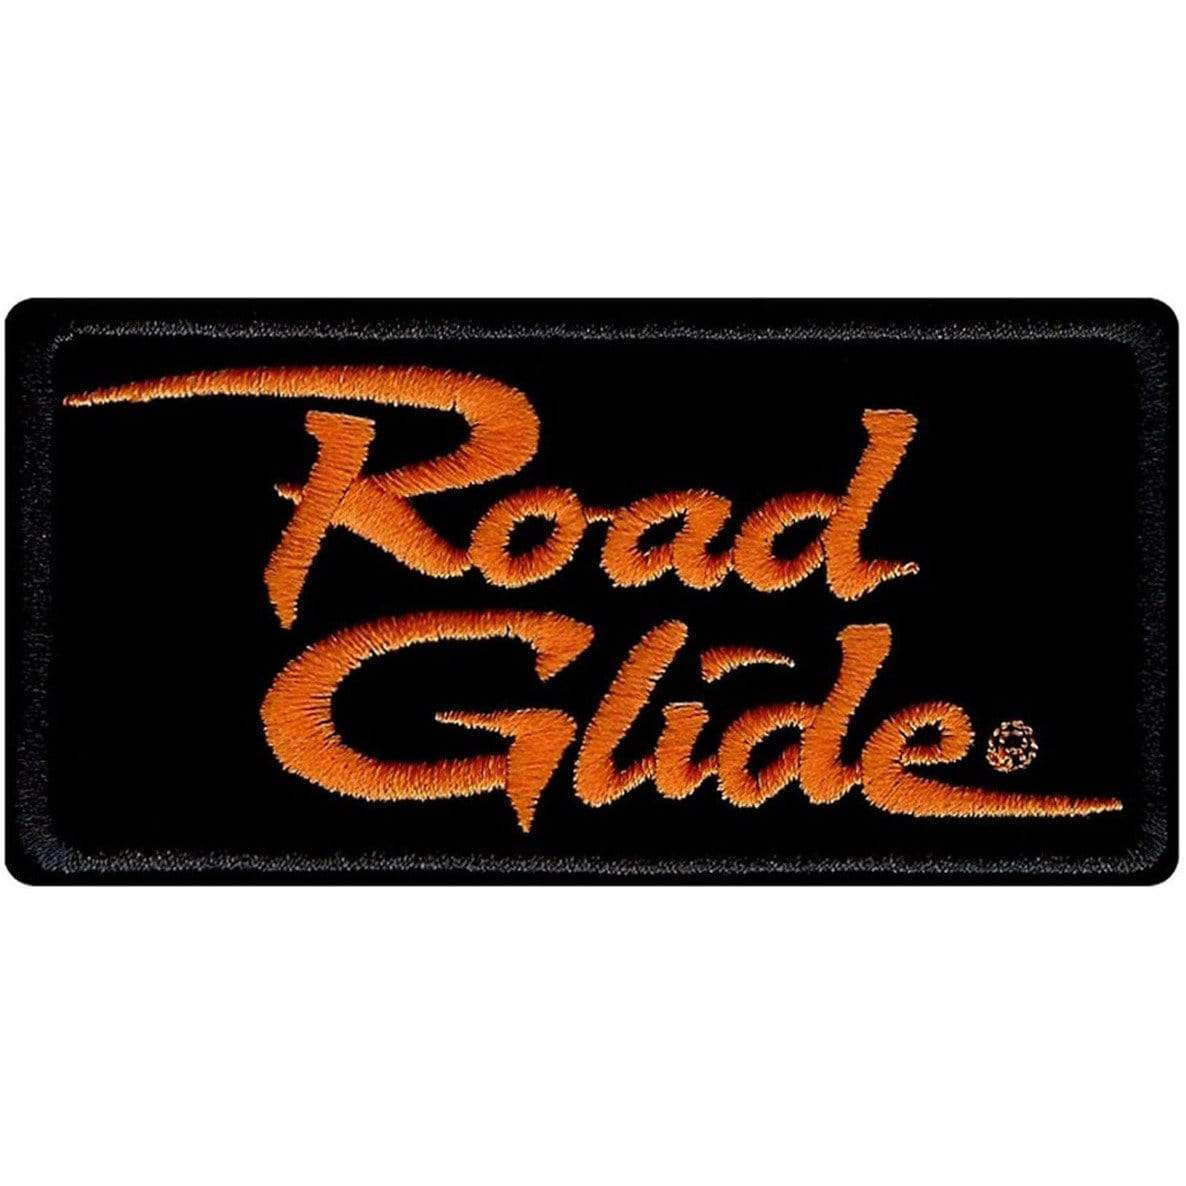 Harley-Davidson® Embroidered Road Glide Emblem Patch.